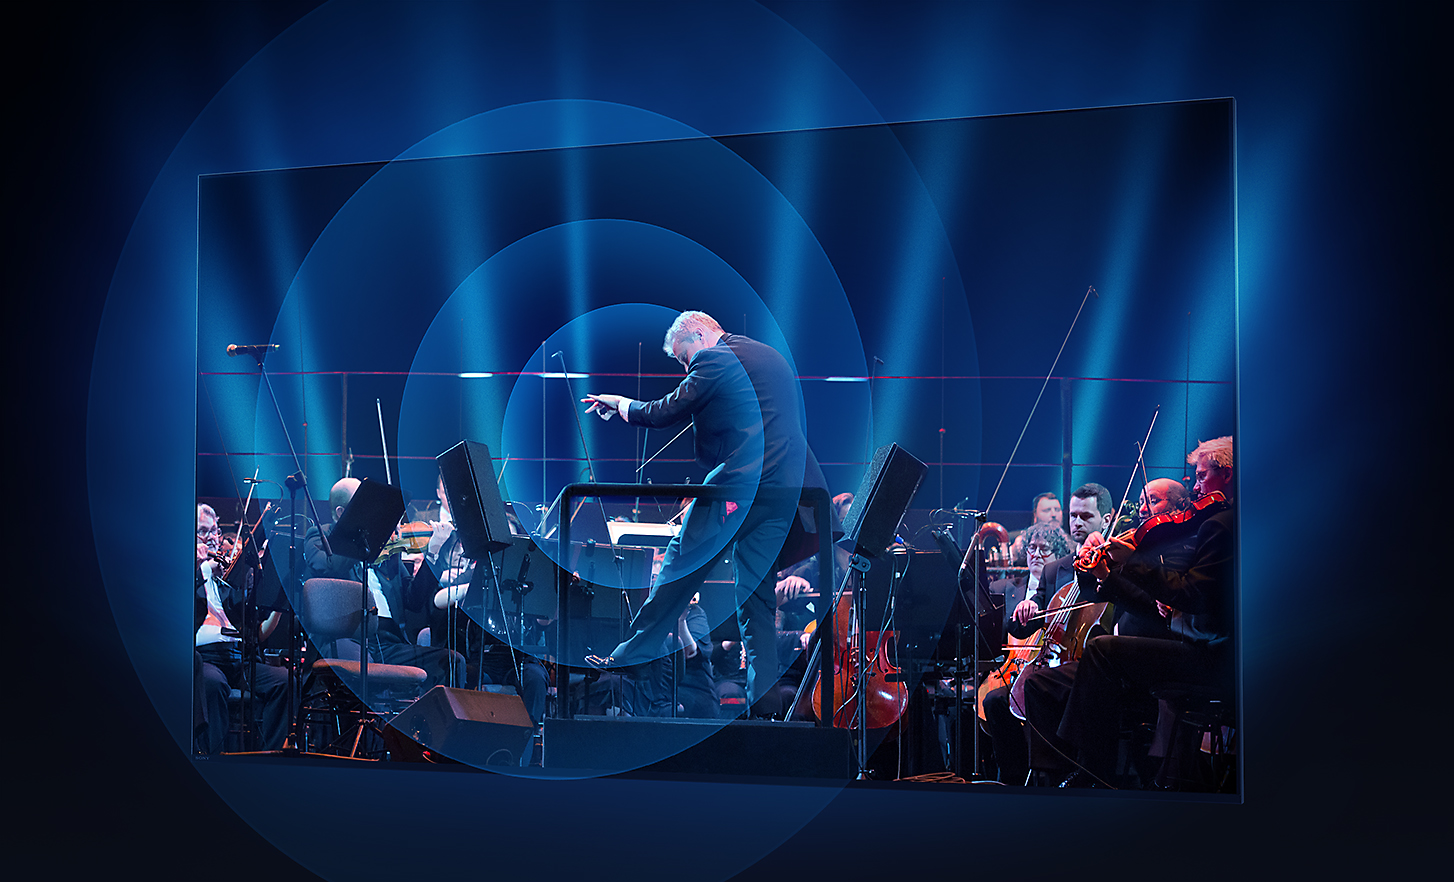 מסך טלוויזיית BRAVIA TV מציג מנצח ותזמורת עם גלי קול המוקרנים החוצה בטבעות חד-מרכזיות ממרכז המסך